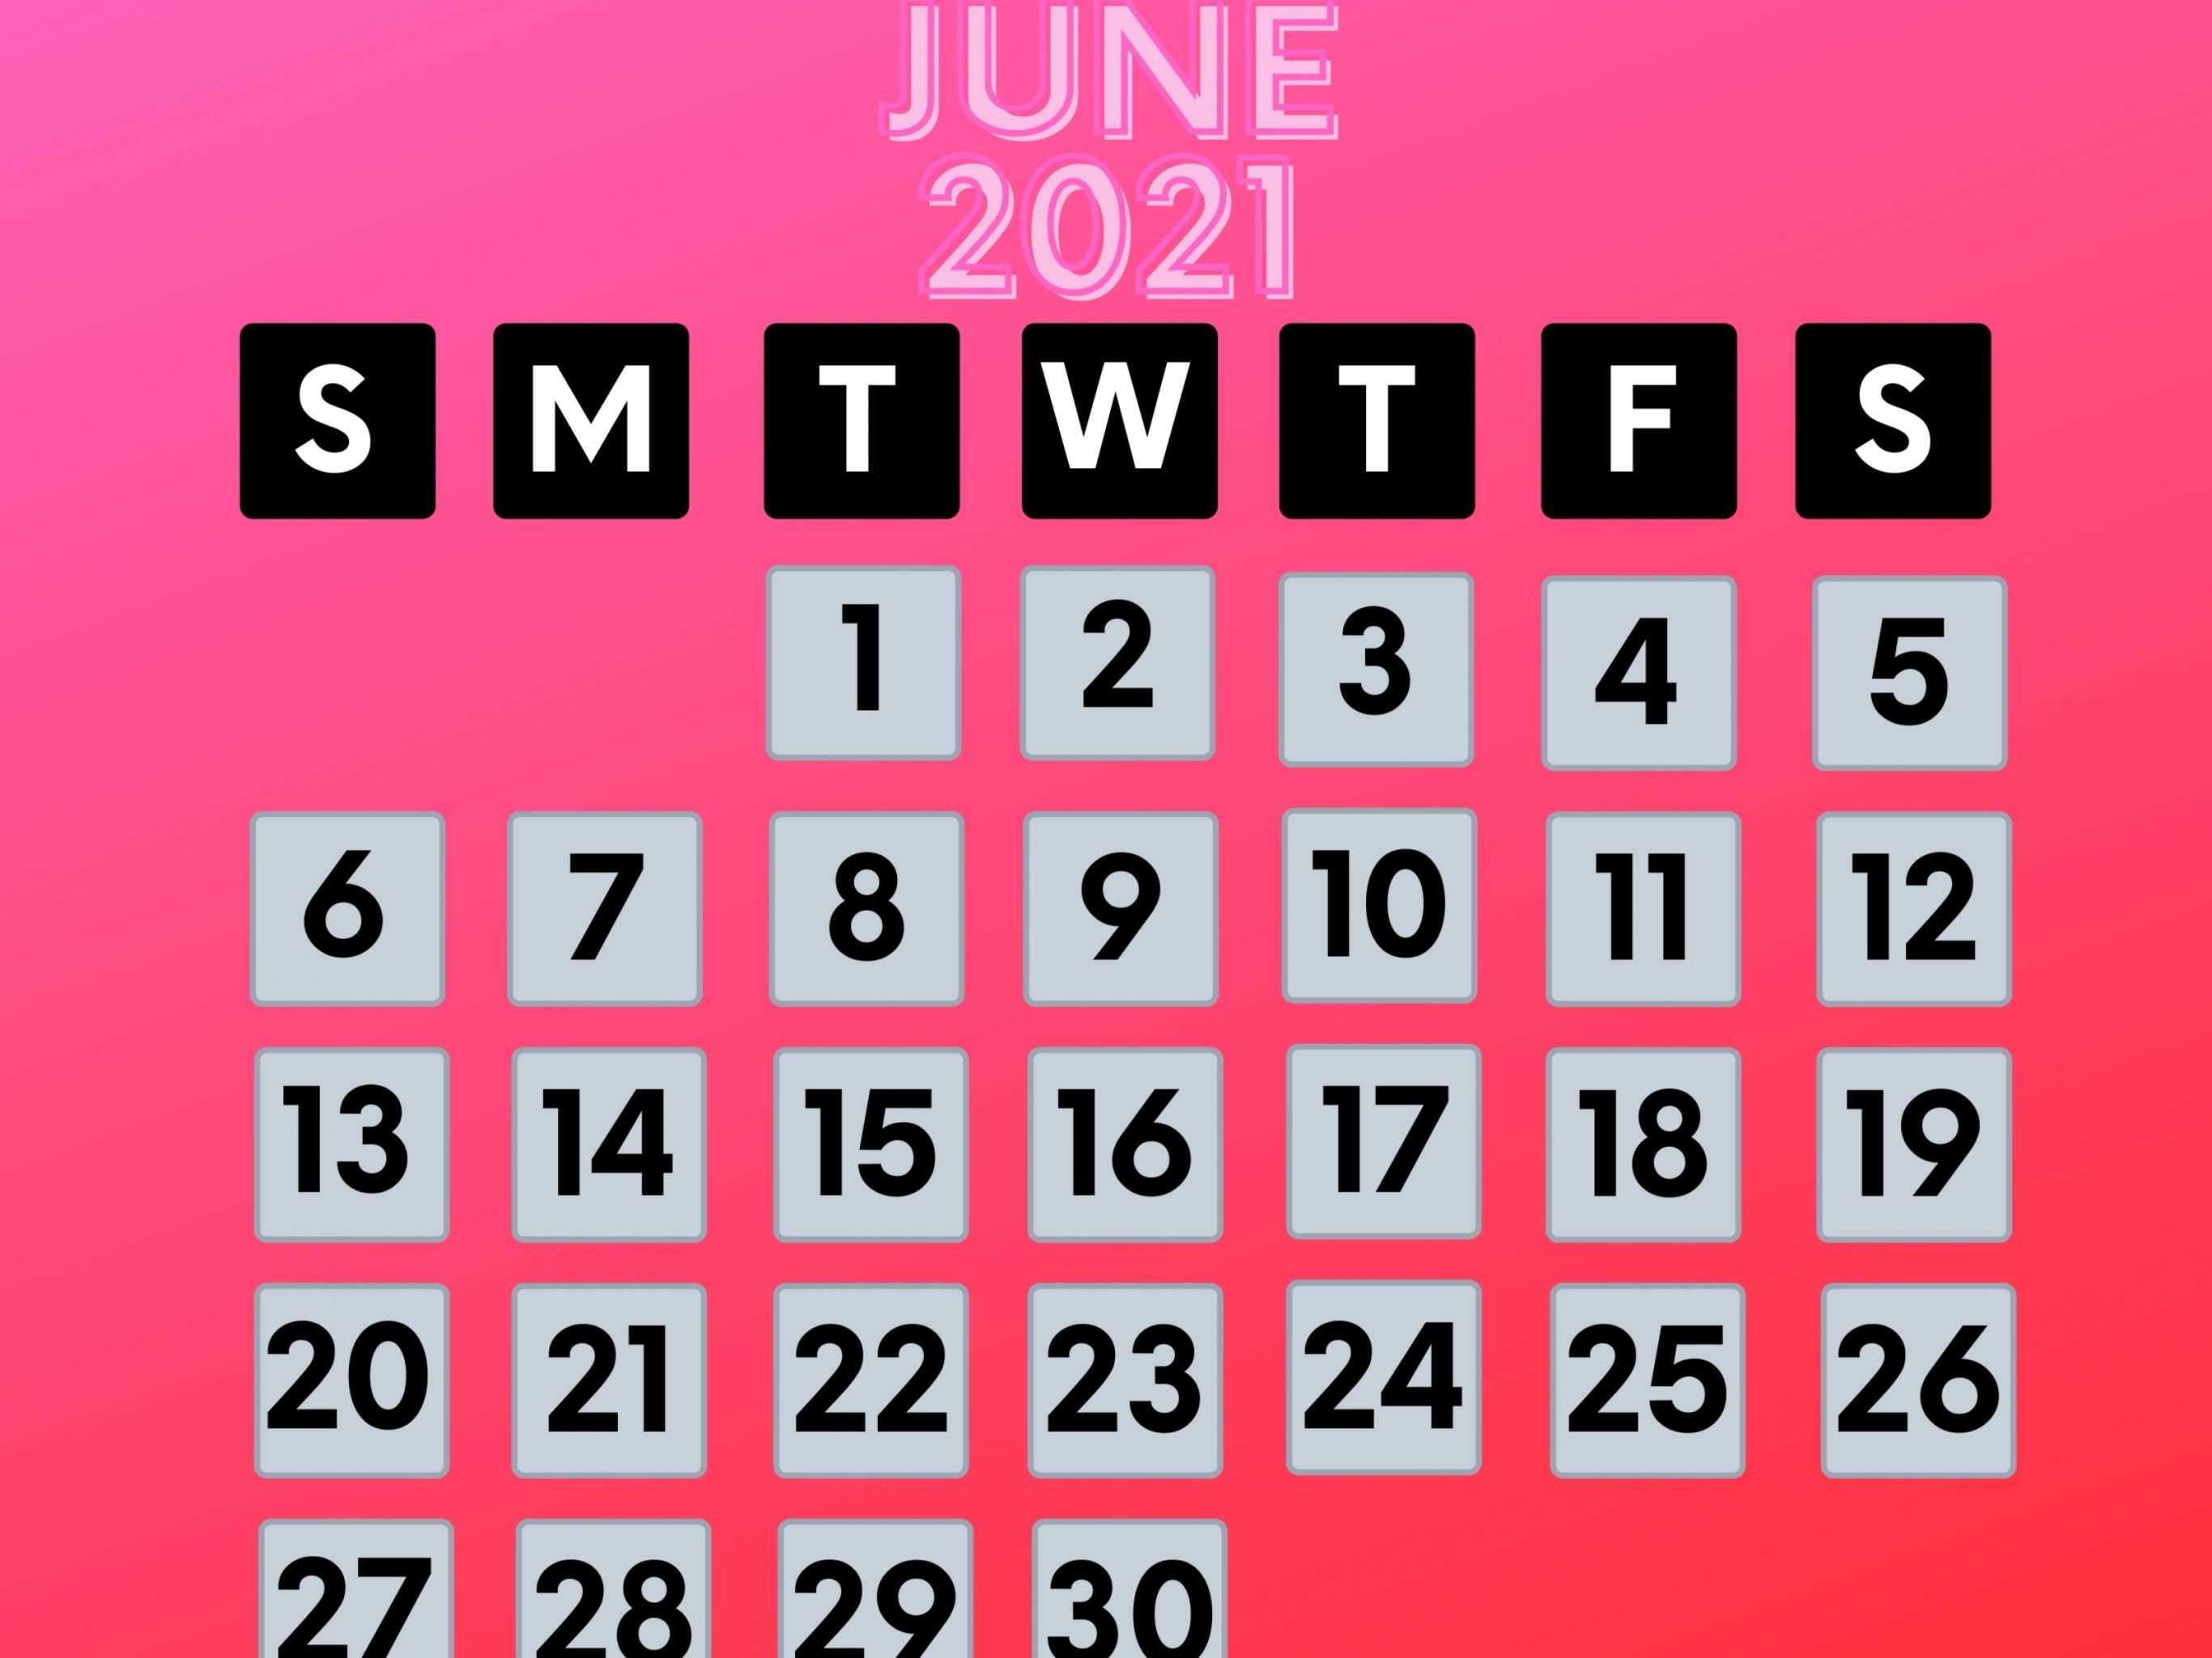 2732x2048 iPad air iPad Pro wallpapers June 2021 Calendar iPad Wallpaper 2732x2048 pixels resolution